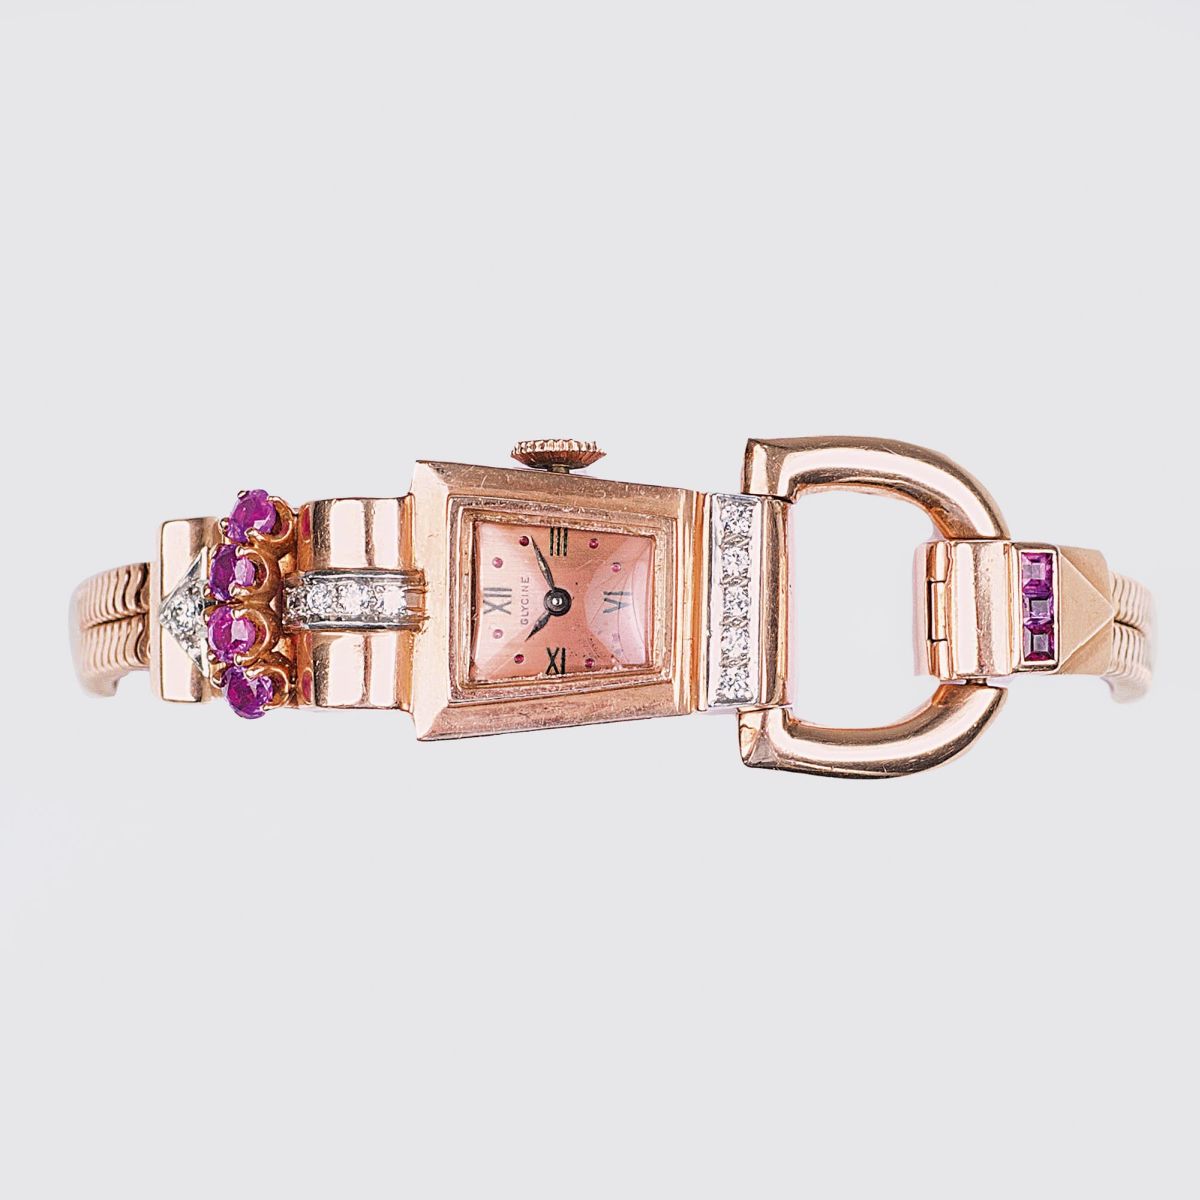 An Art-déco Jewel Watch by Glycine with Rubies and Diamonds